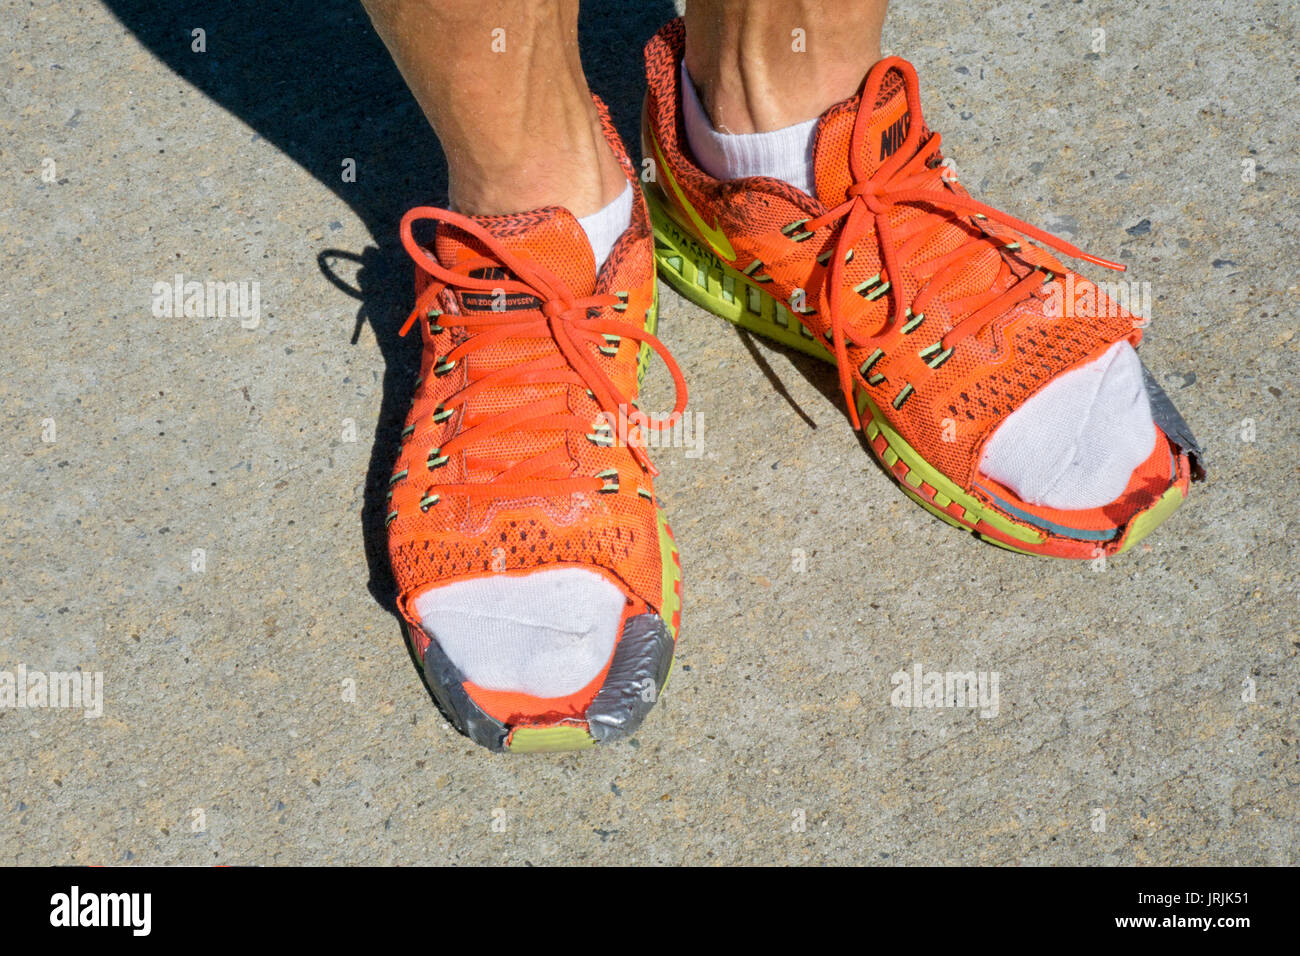 Ultra maratona del runner scarpe con la parte anteriore nella porzione superiore tagliata per ridurre al minimo le vesciche. In occasione dell'annuale Giornata 51 3100 miglia race nel Queens, a New York. Foto Stock